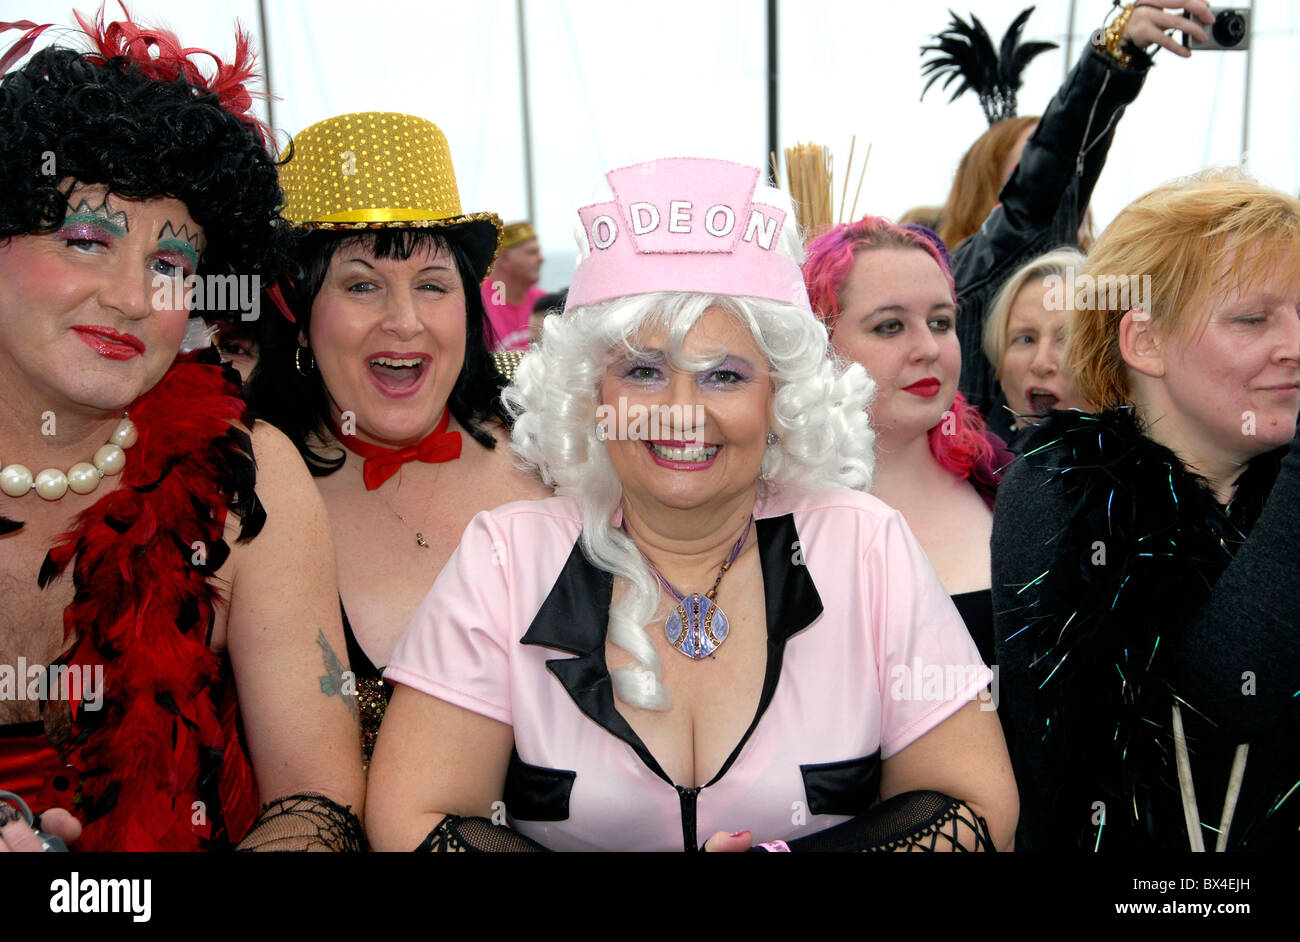 Fans en costume de la Rocky Horror Show tentent d'record du monde pour la plupart des danseurs faisant le Time Warp, Brighton, UK Banque D'Images